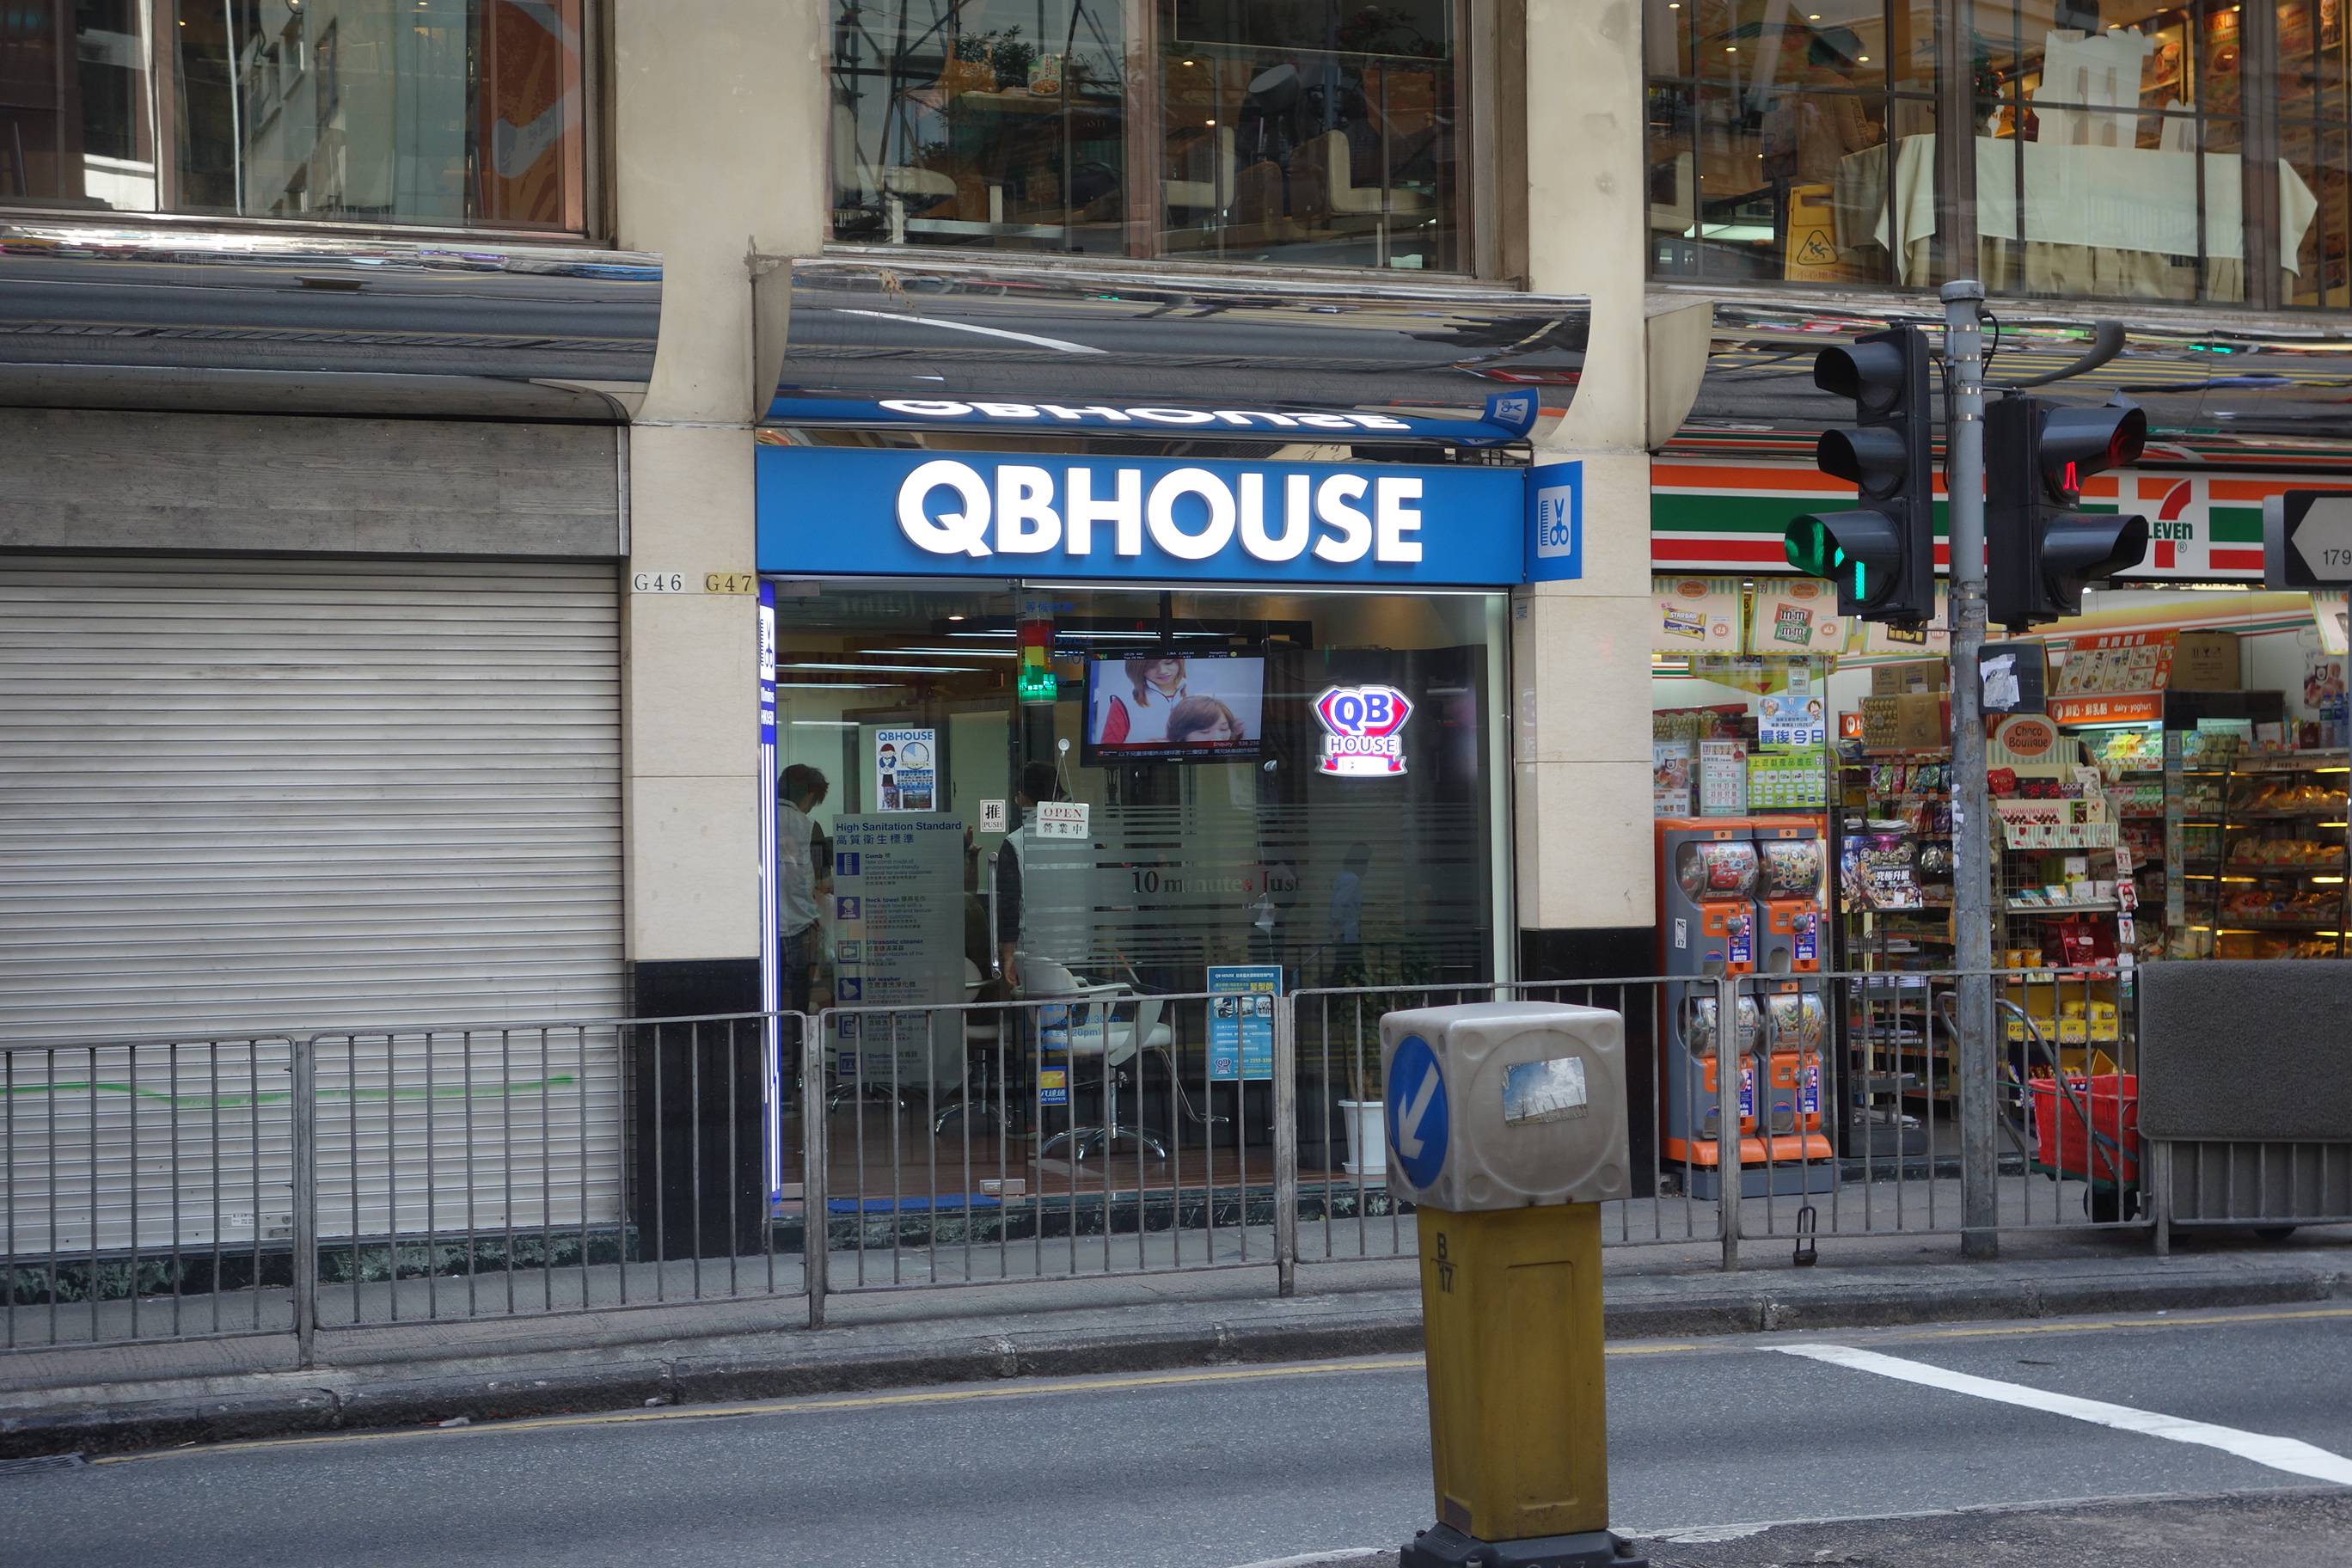 QB House in Wan Chai